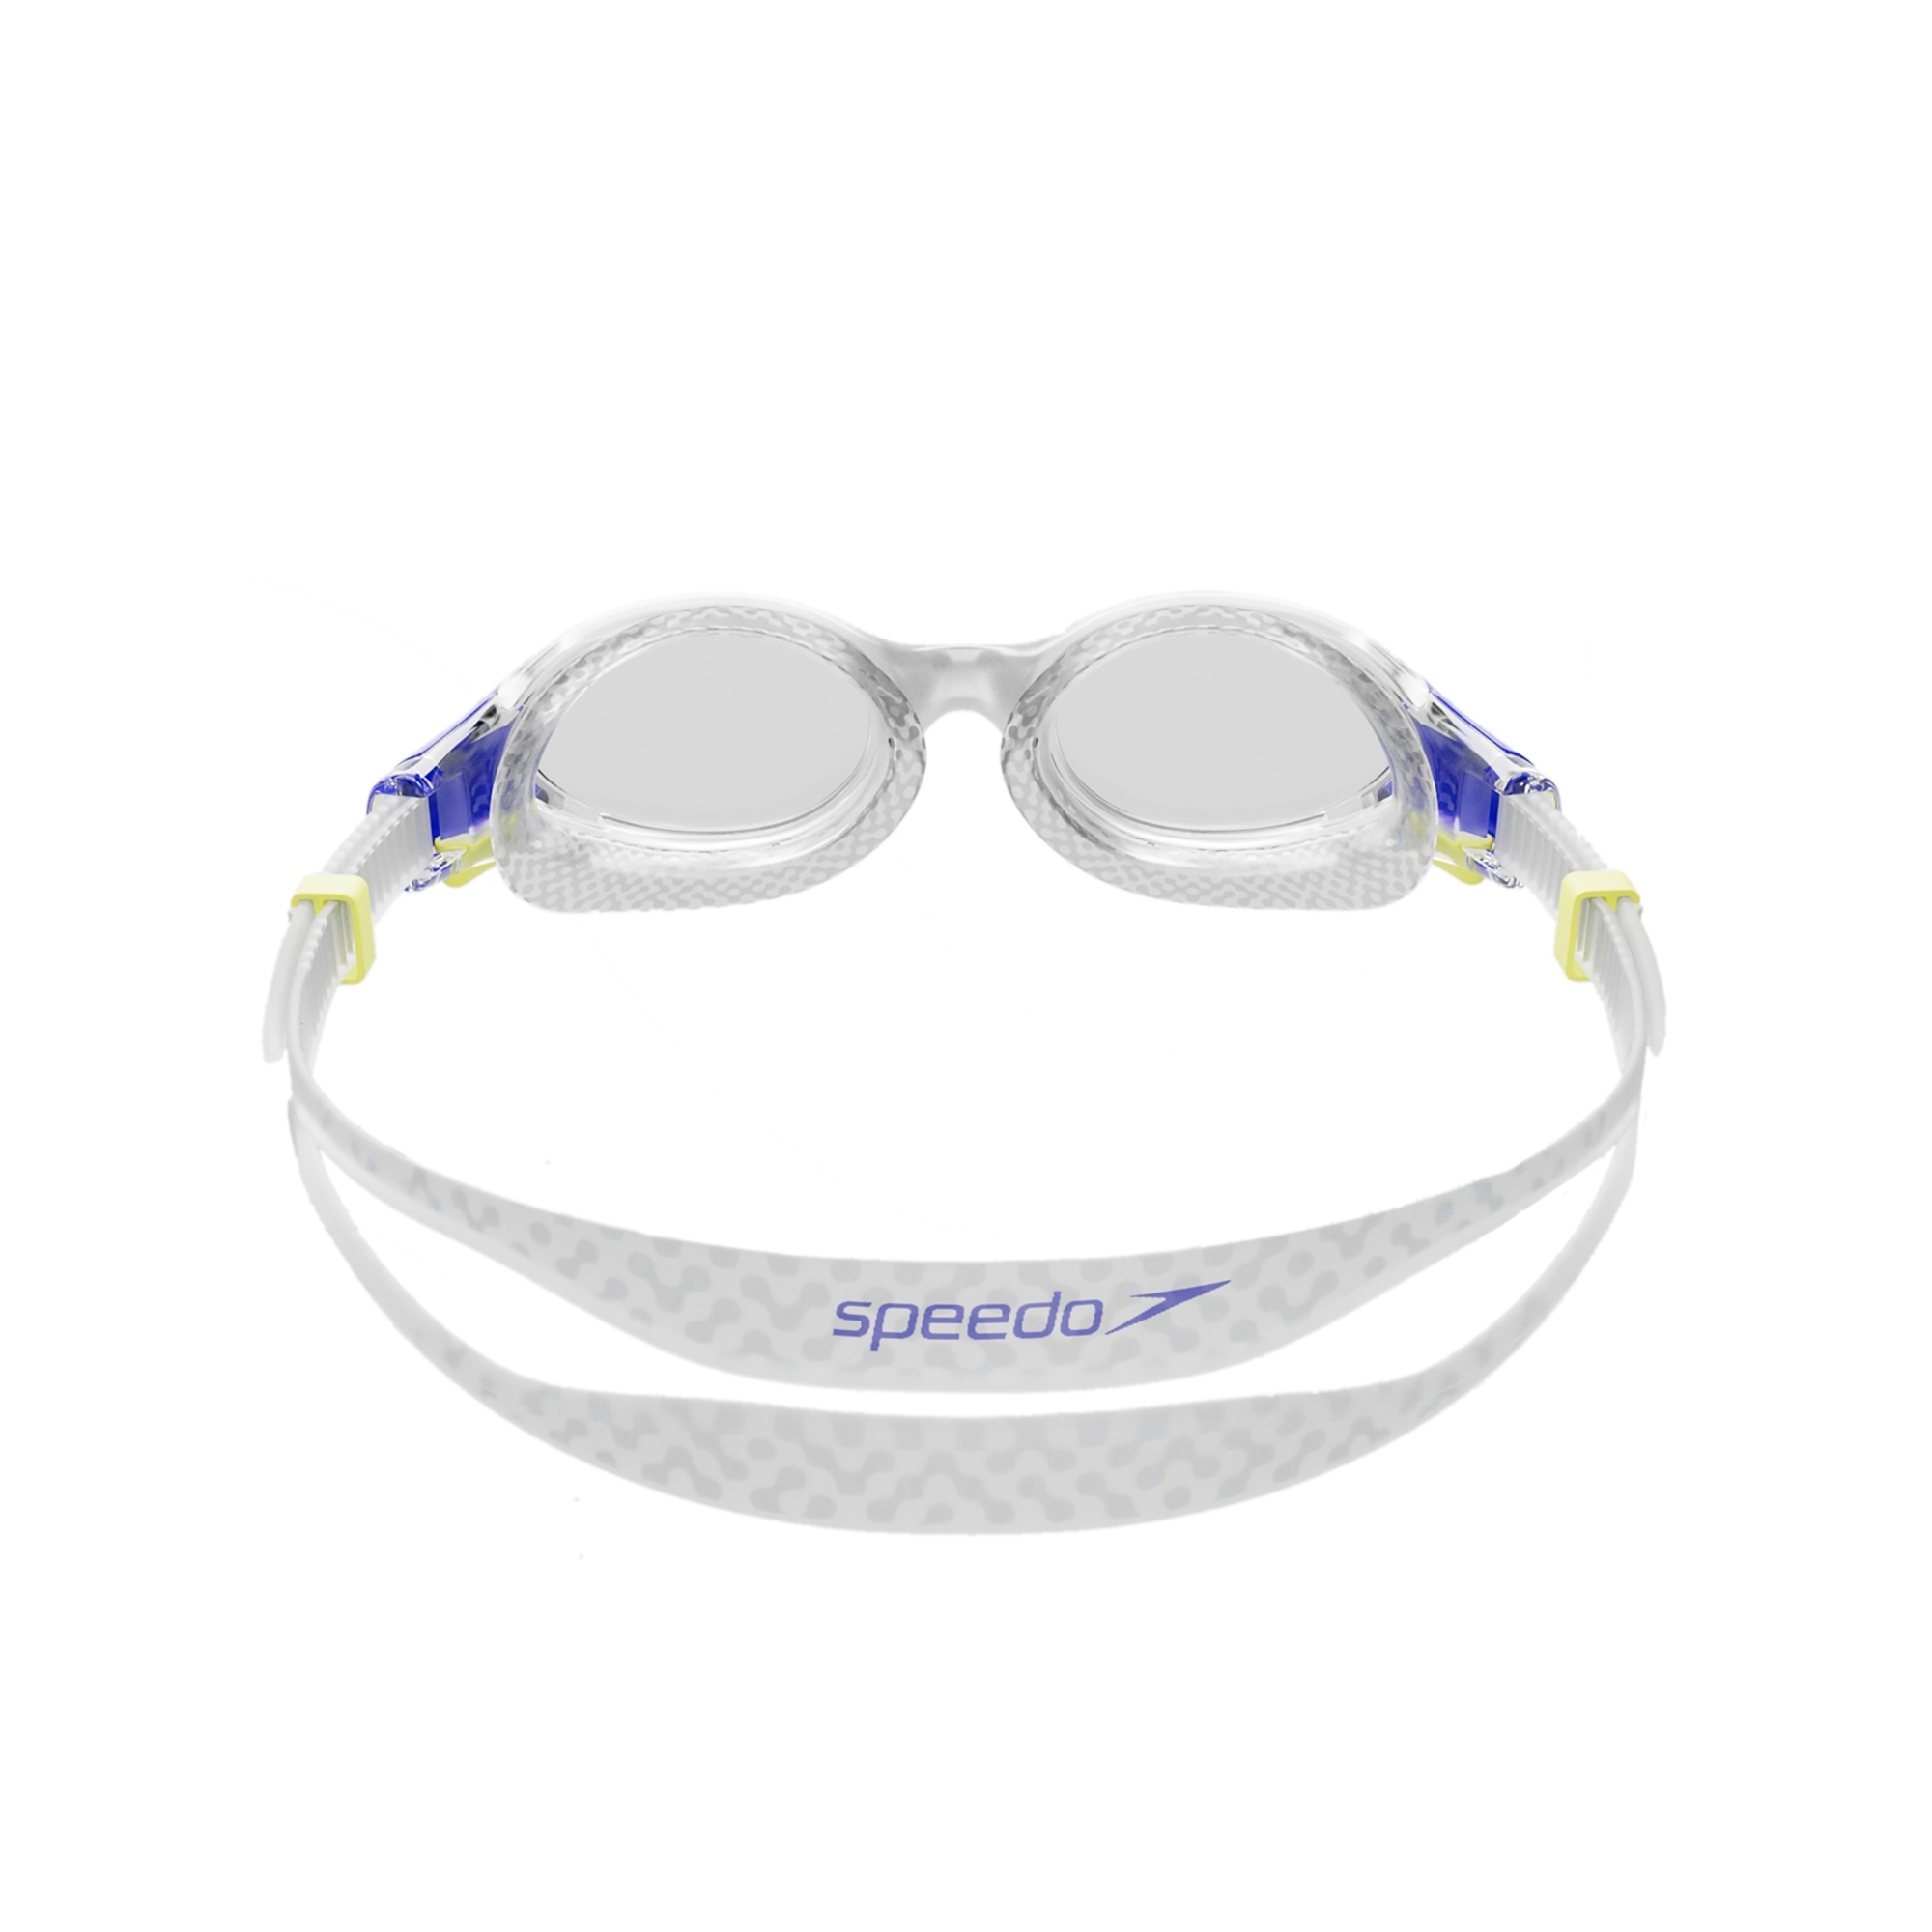 Speedo Biofuse 2.0 Junior Goggle